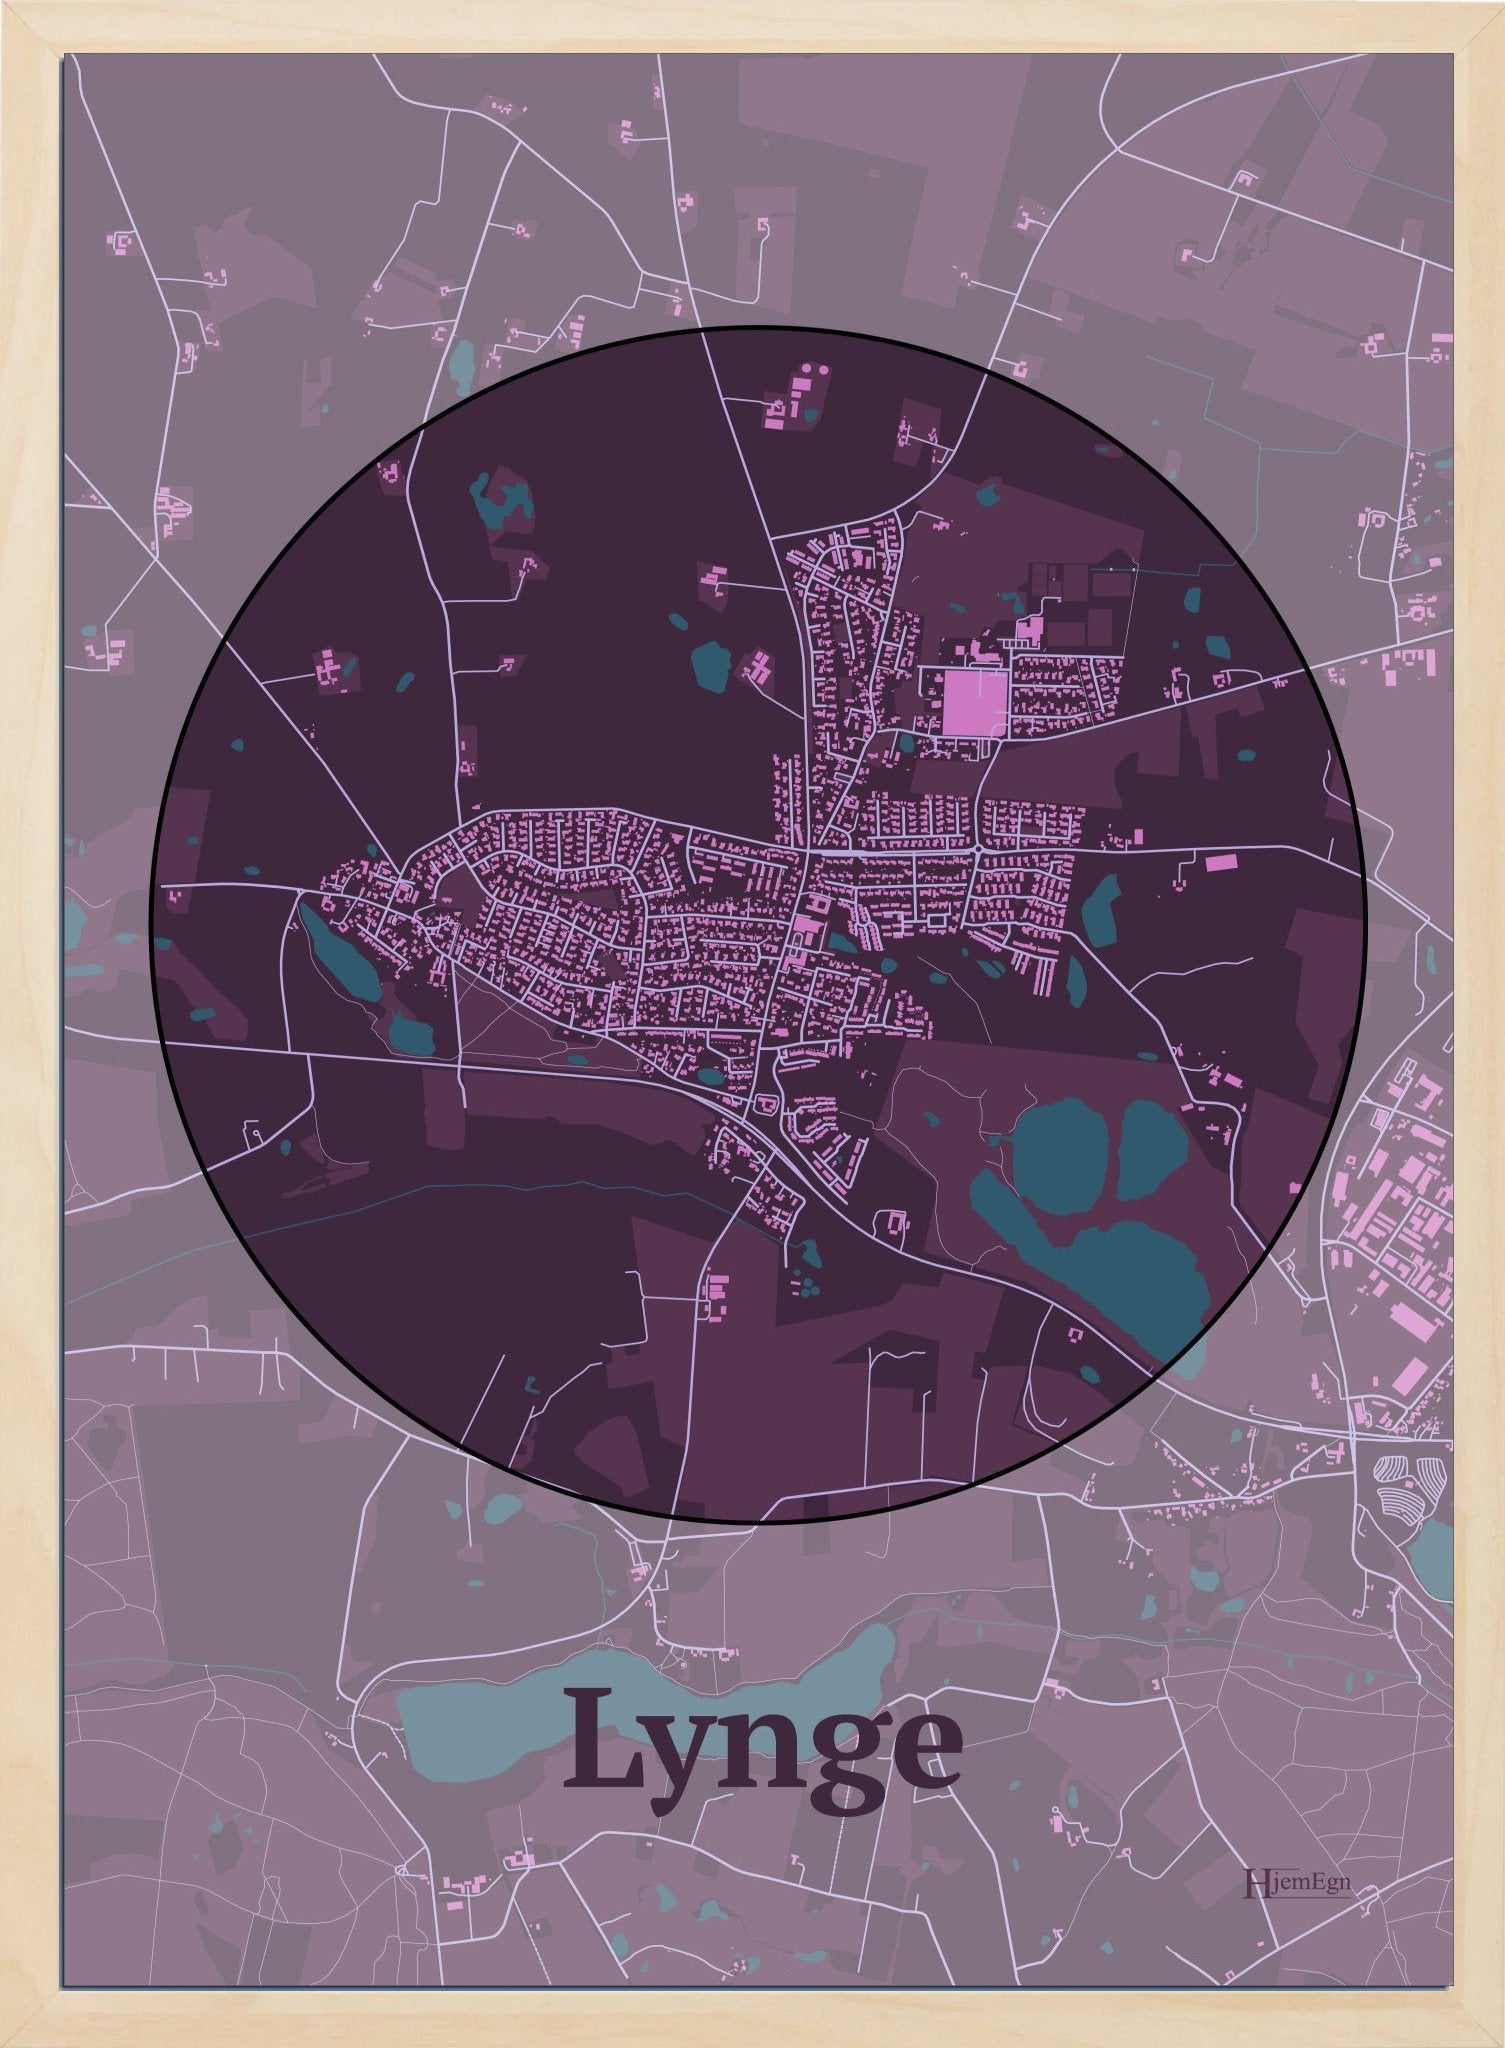 Lynge plakat i farve mørk rød og HjemEgn.dk design centrum. Design bykort for Lynge